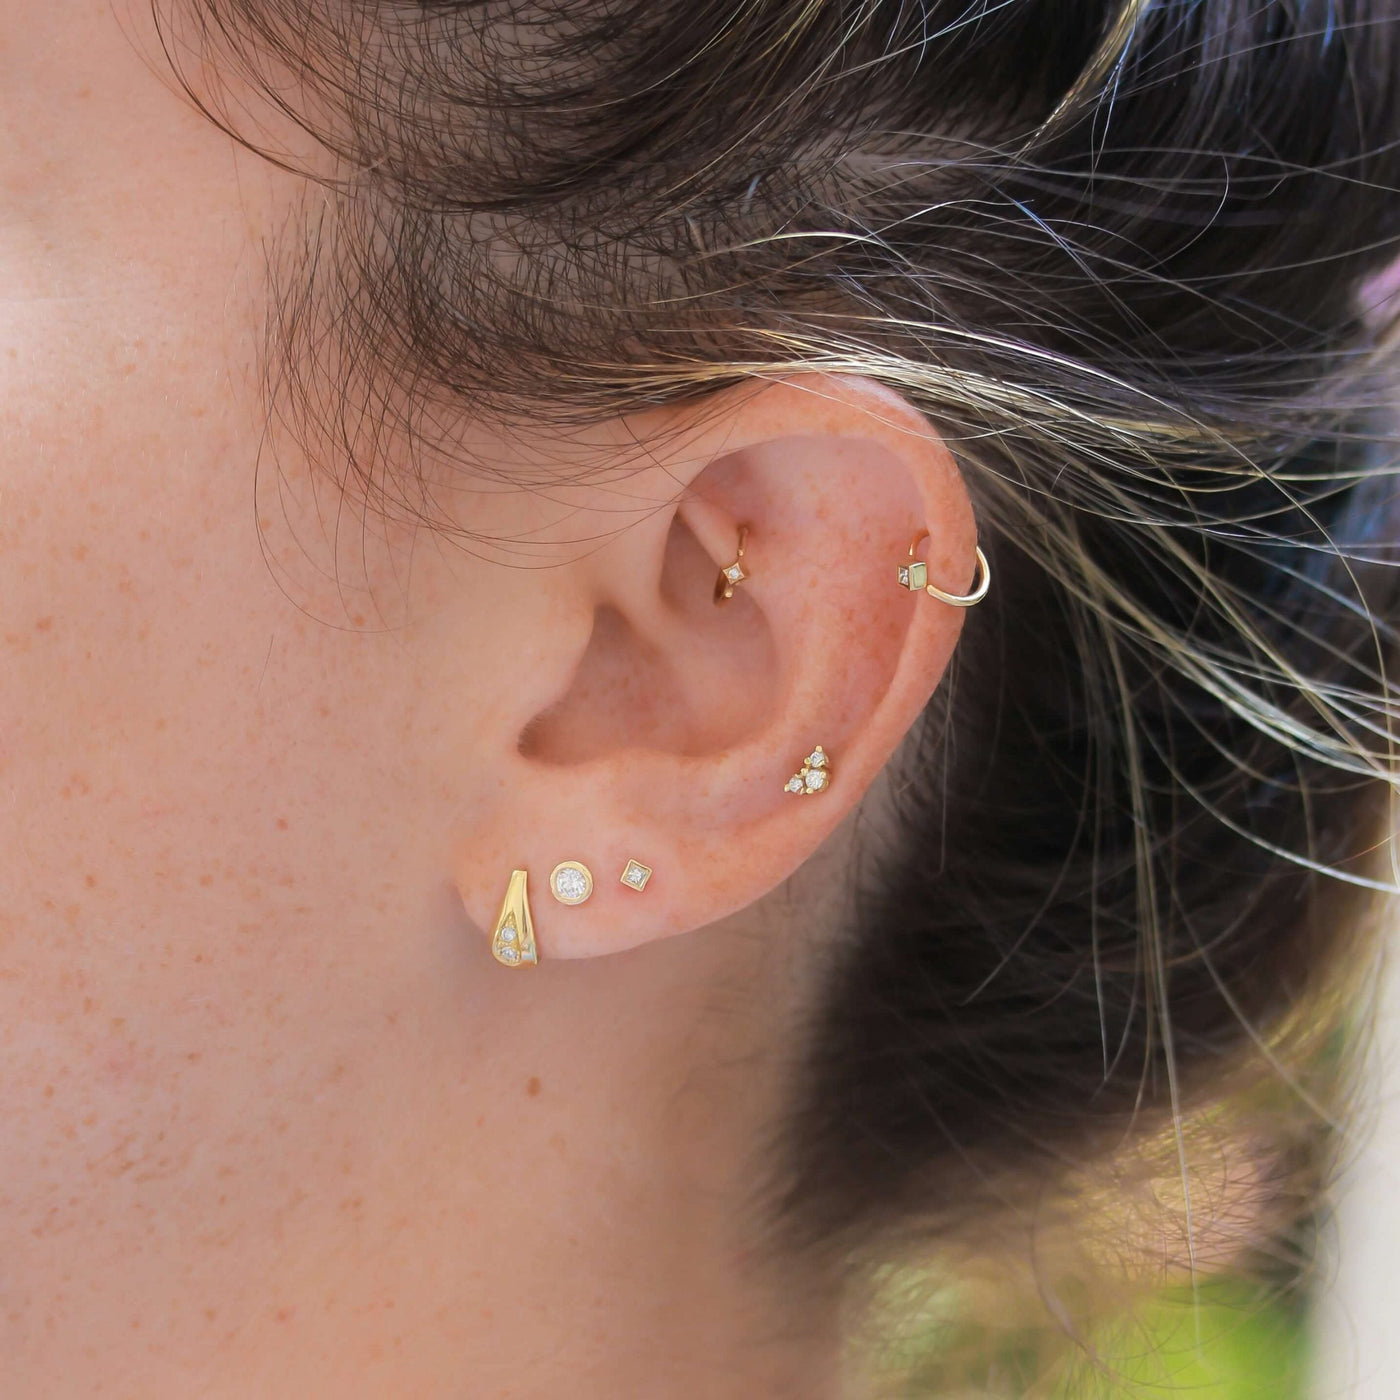 Mercury Piercing Earring 14K Gold White Diamonds Earrings 